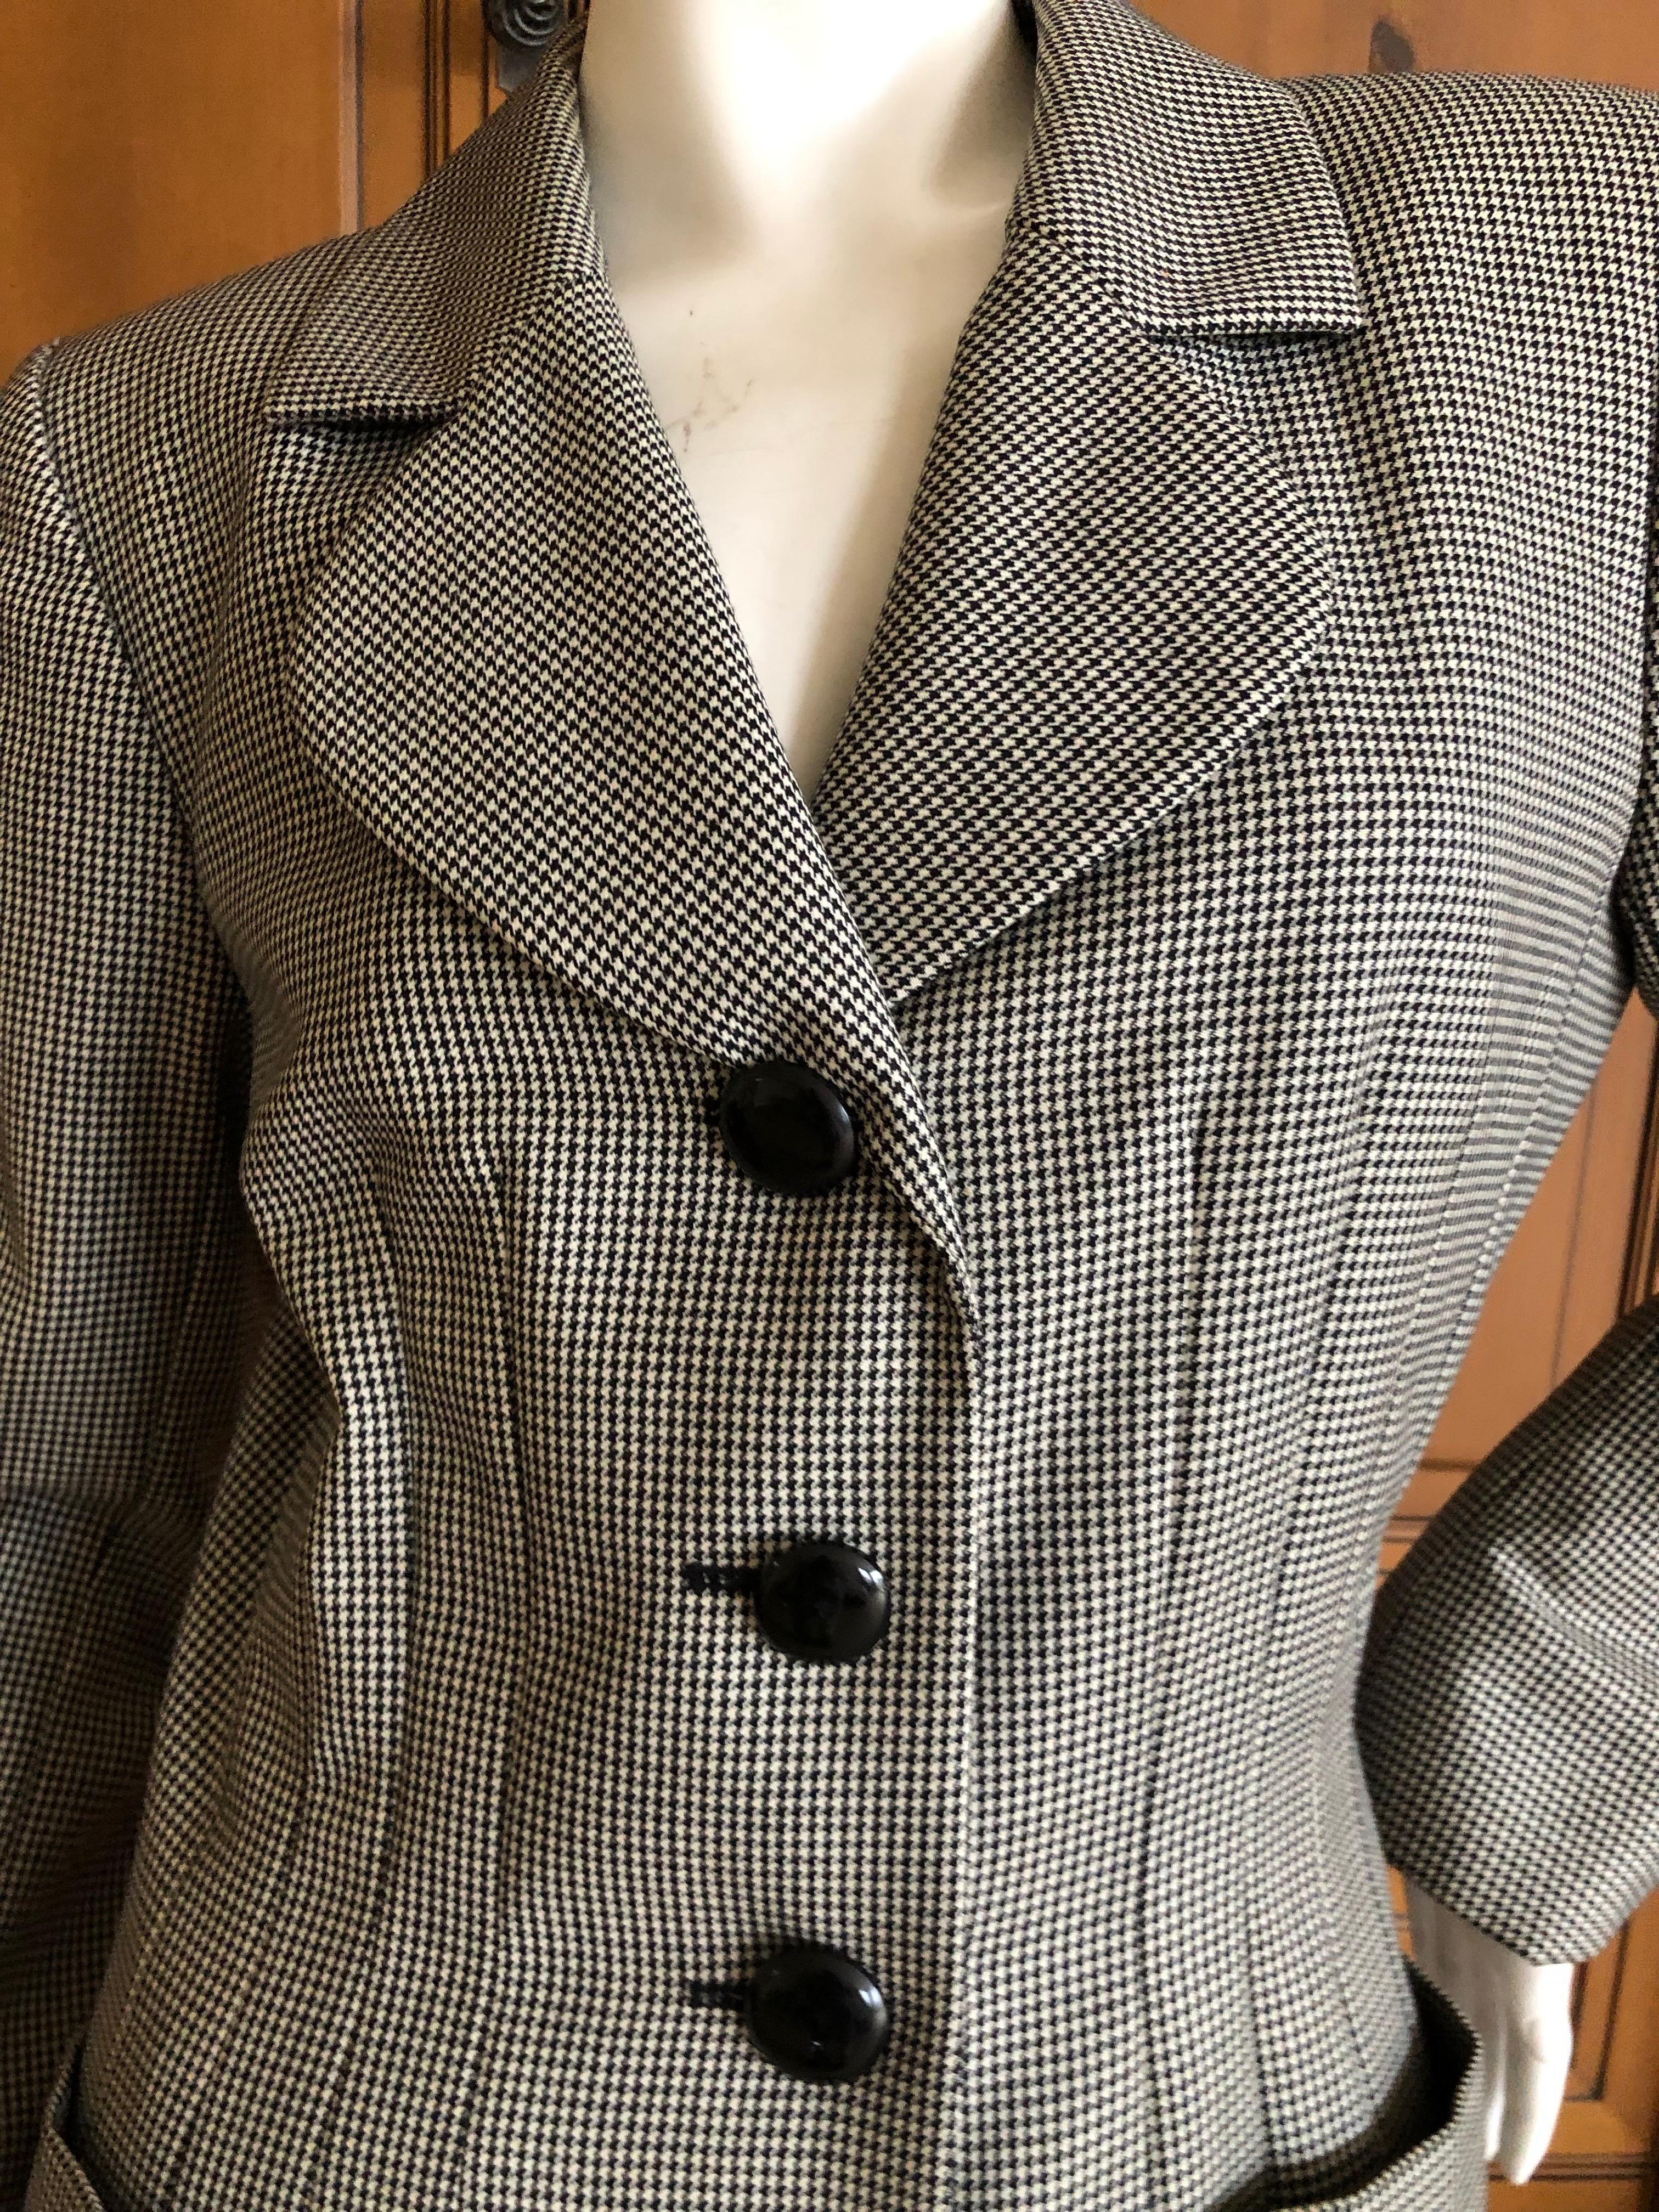 Yves Saint Laurent Rive Guache Vintage 1980's Houndstooth Suit For Sale 1